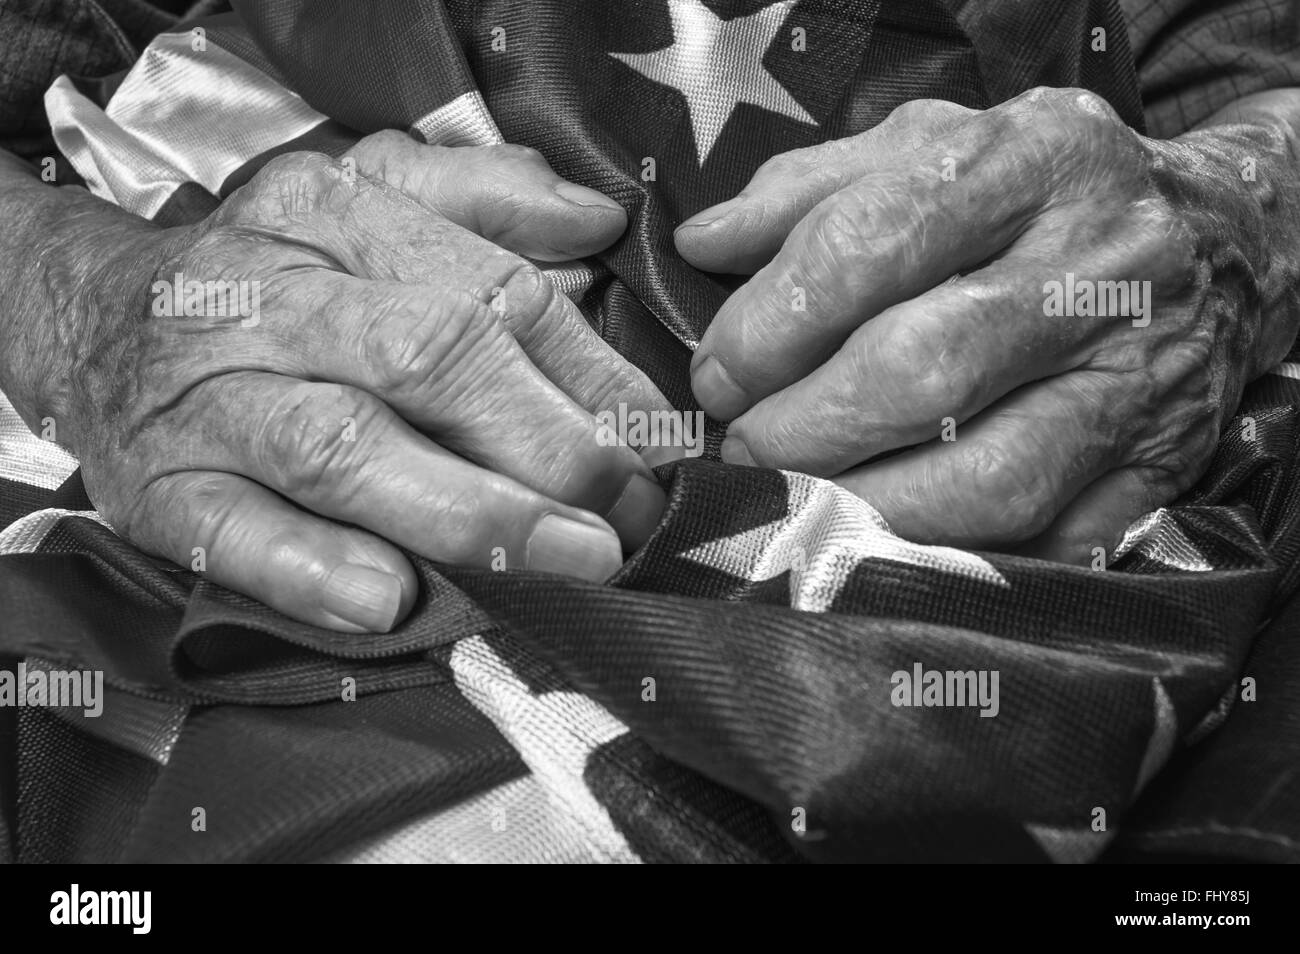 Alte Frau Hände halten eine amerikanische Flagge. Schwarz / weiß Bild. Selektiven Fokus. Stockfoto